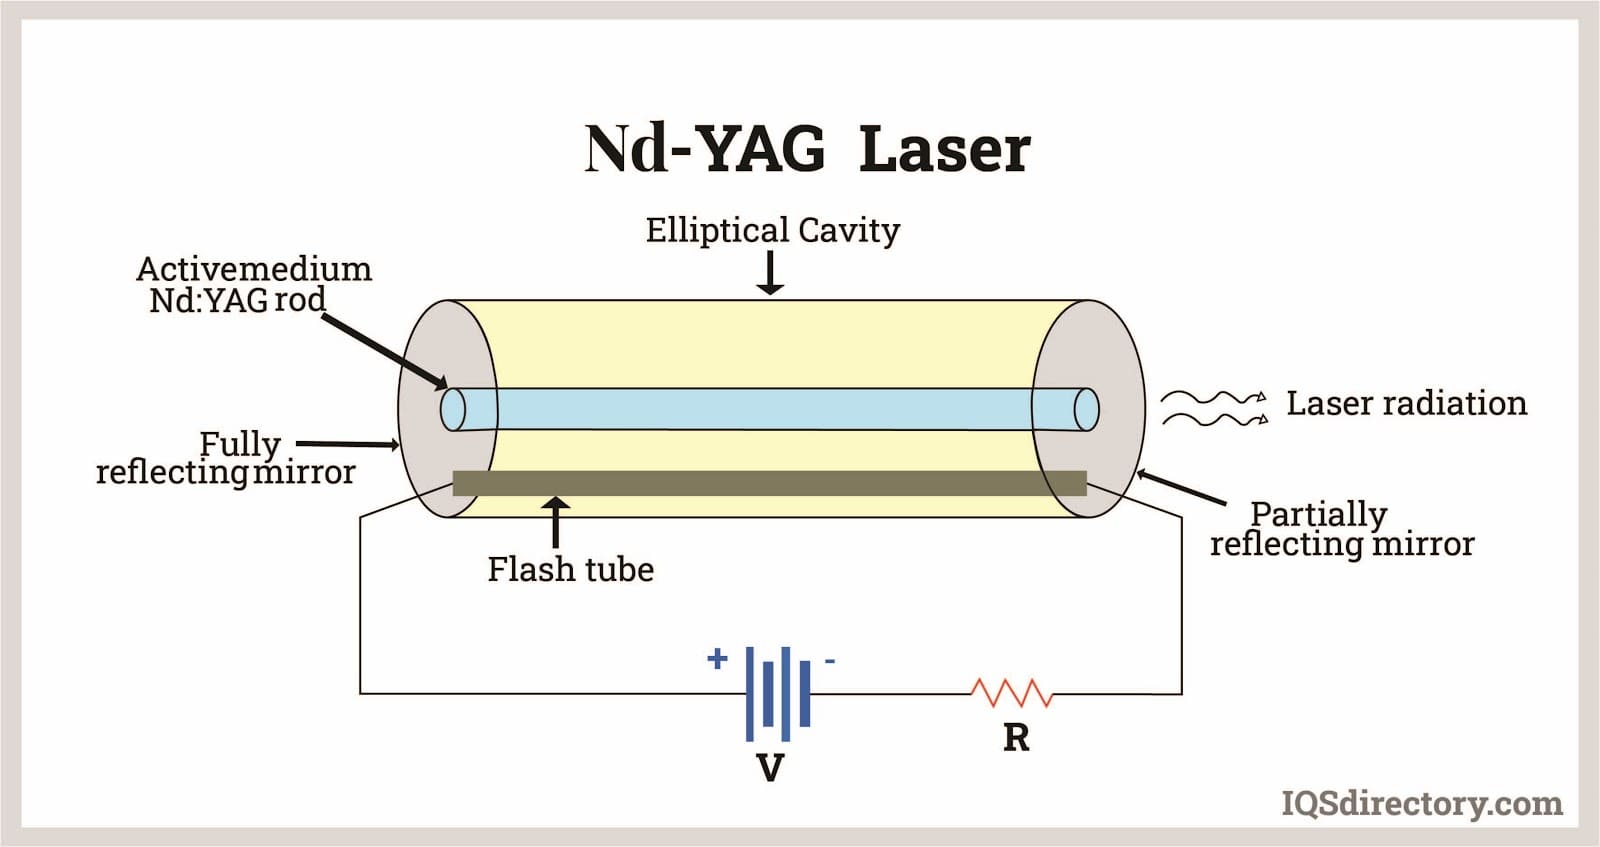 Nd-YAG Laser